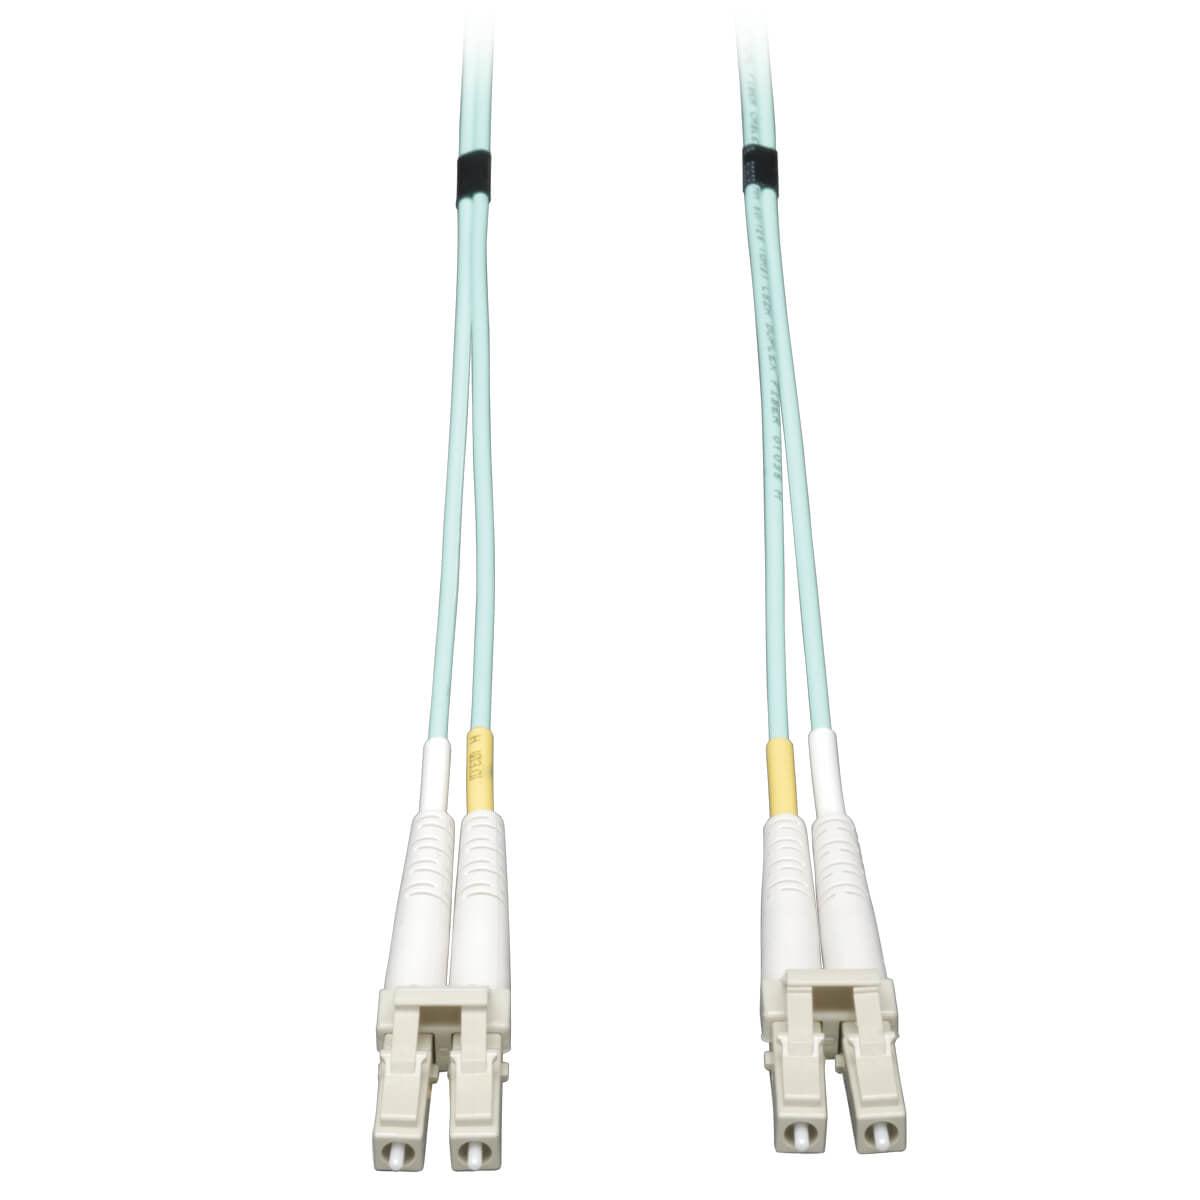 Tripp Lite N820-35M 10Gb Duplex Multimode 50/125 Om3 Lszh Fiber Patch Cable, (Lc/Lc) - Aqua, 35M (115 Ft.)